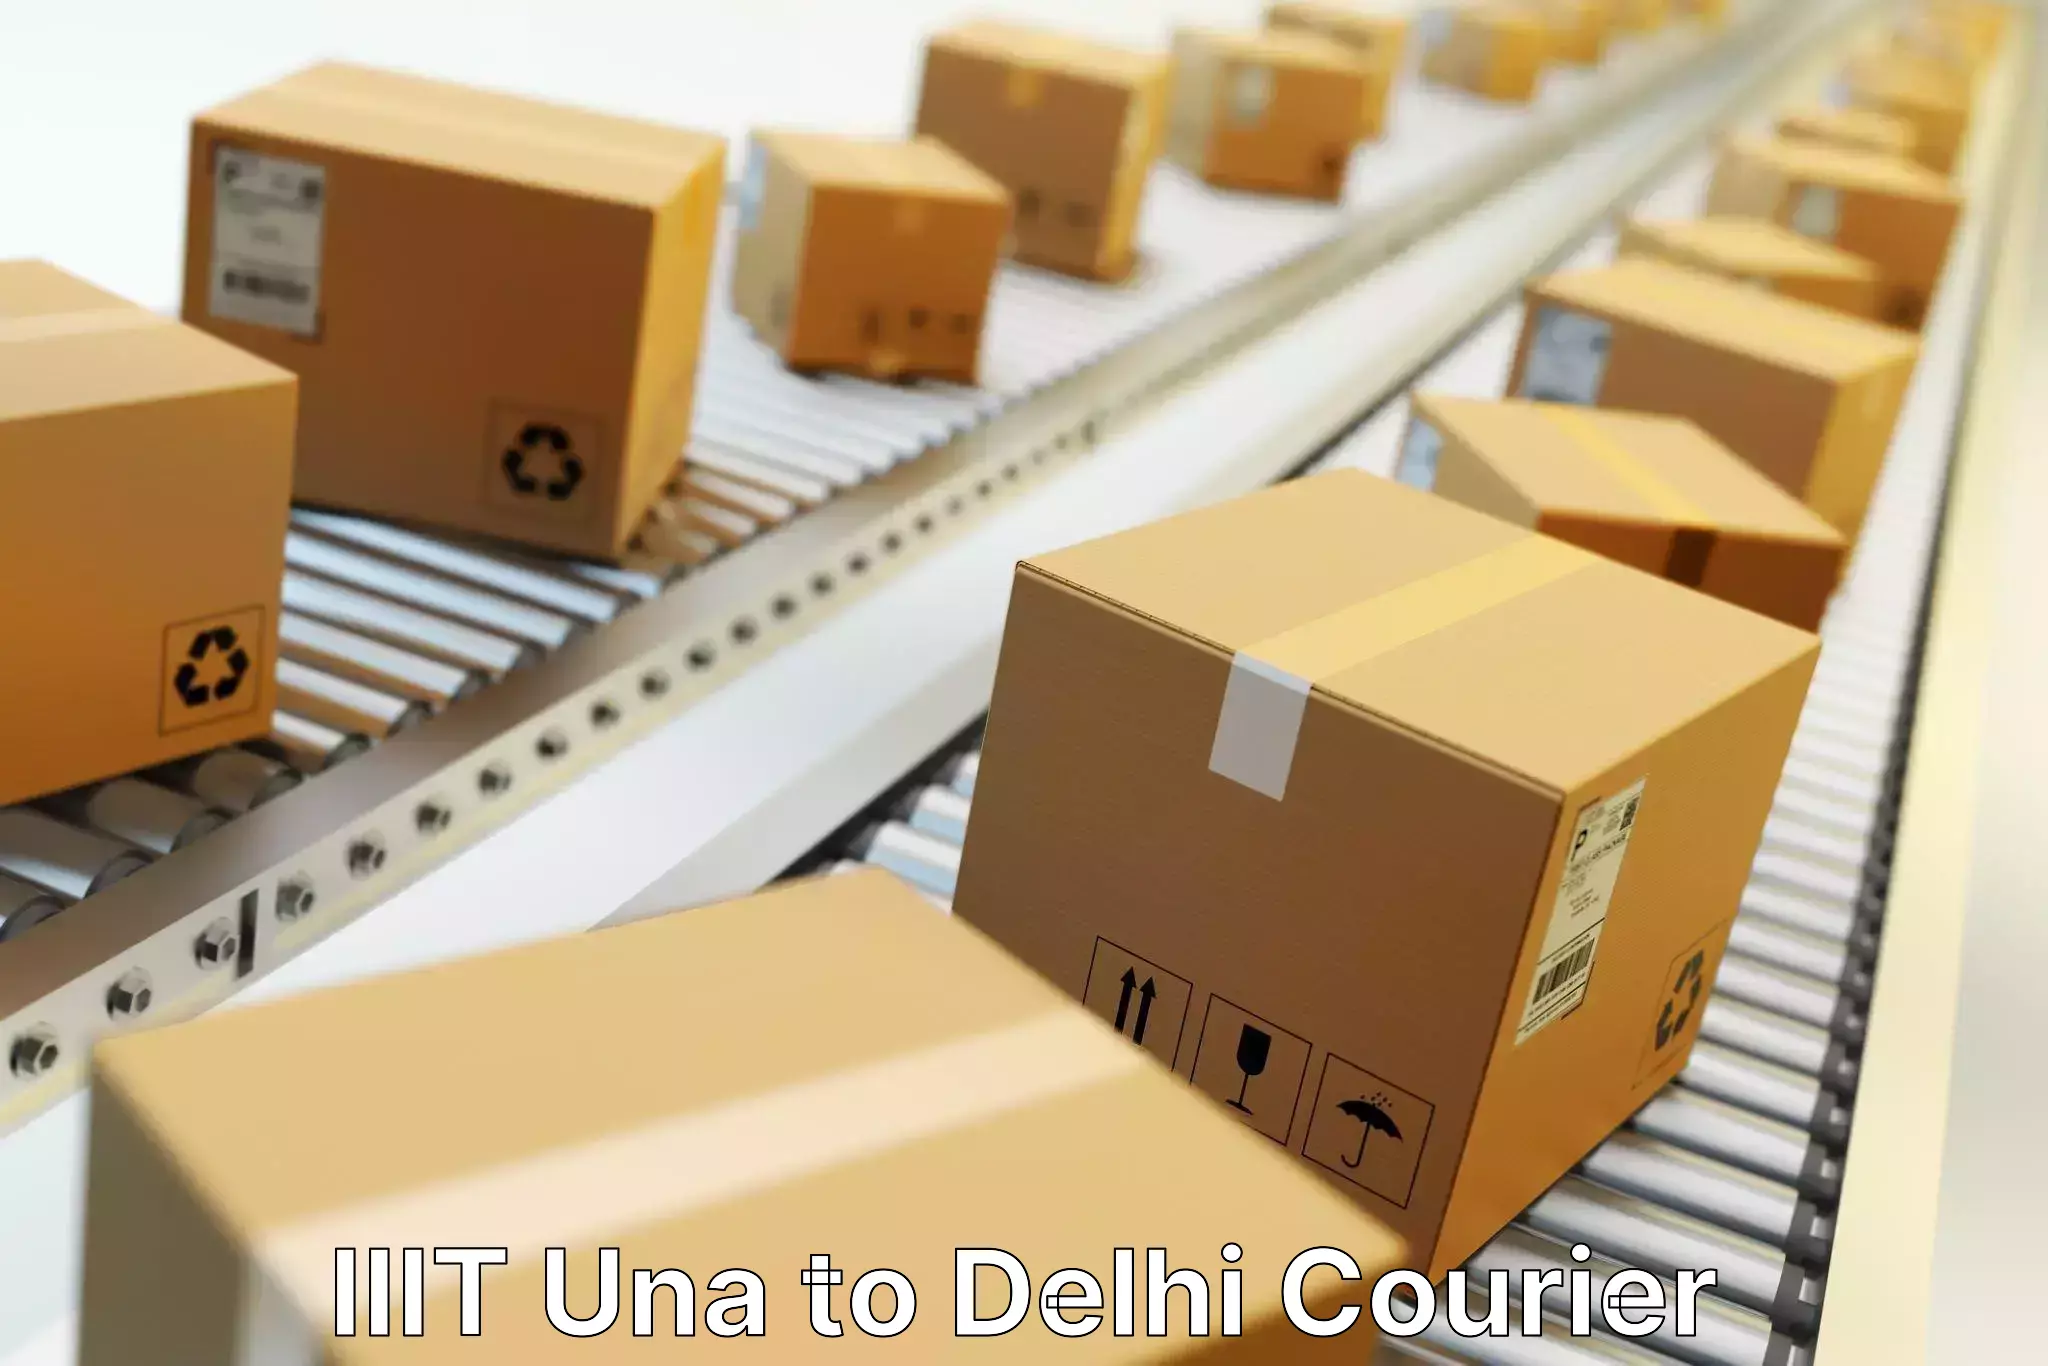 Flexible delivery scheduling IIIT Una to Delhi